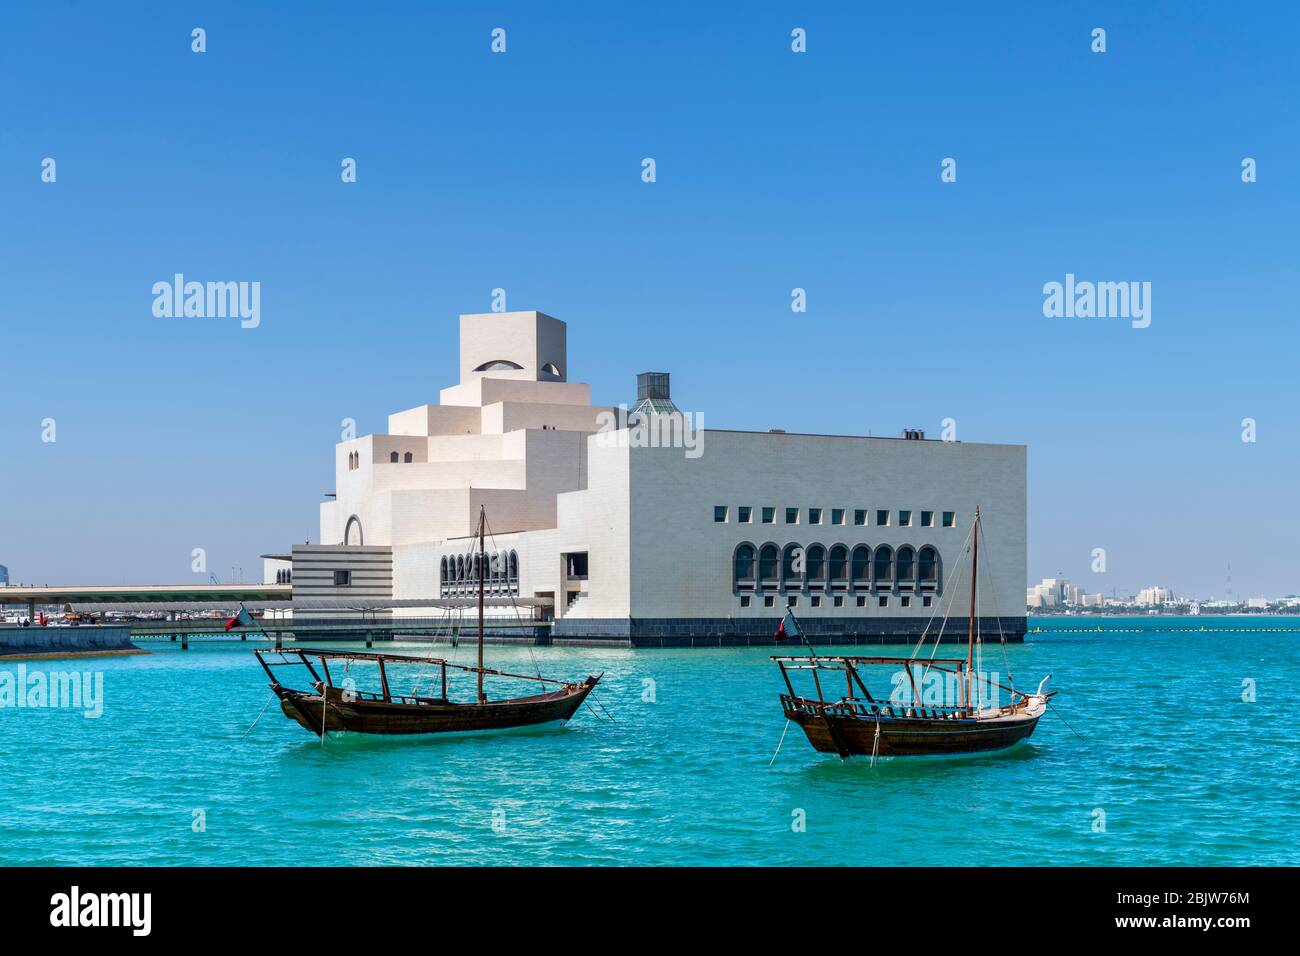 El Museo de Arte Islámico del Parque MIA con dhows en primer plano, Doha, Qatar, Oriente Medio Foto de stock